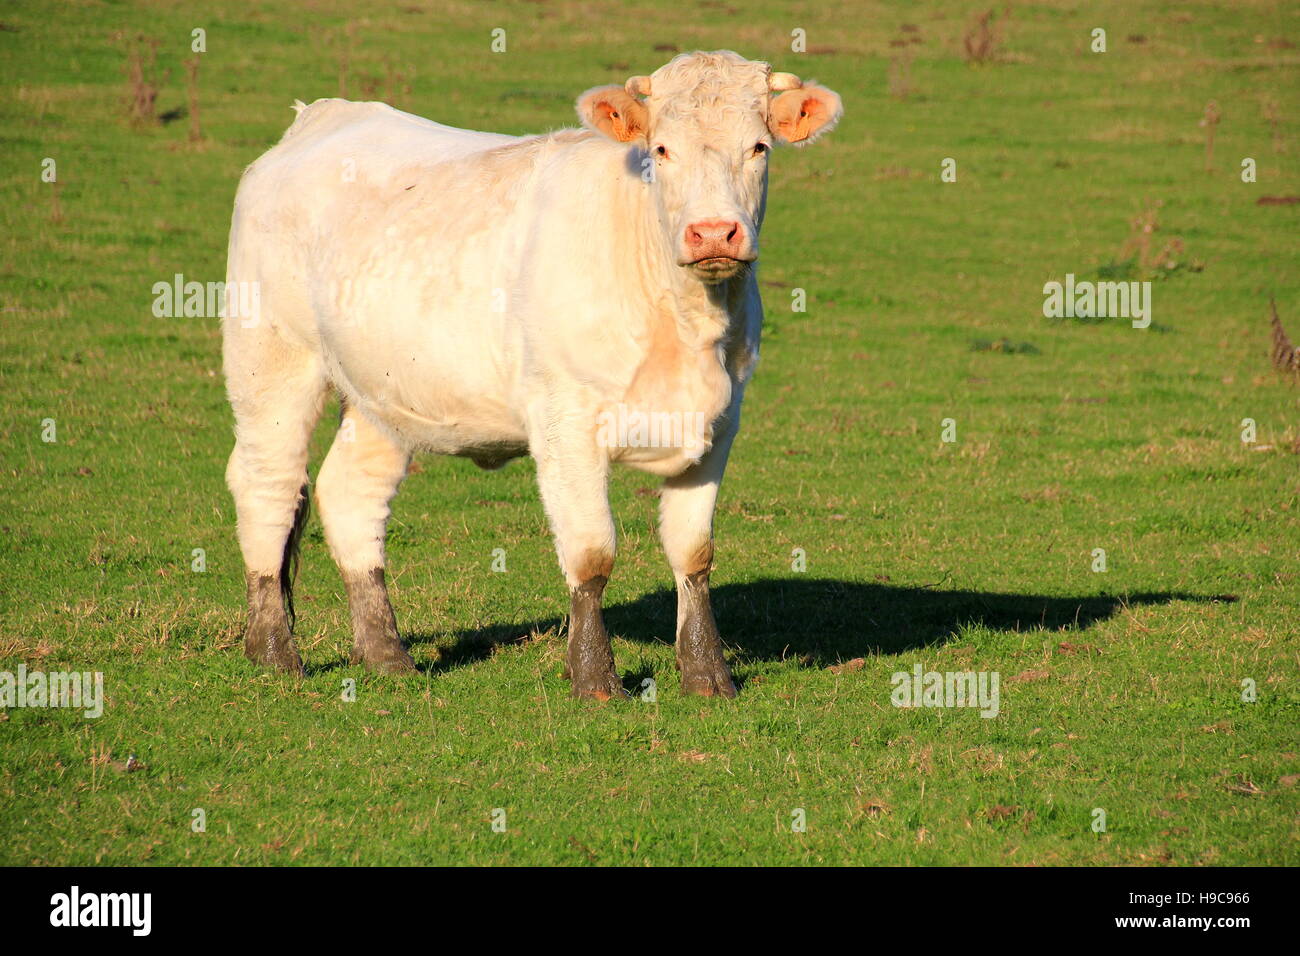 Curieux vache blanche avec pieds sales Banque D'Images